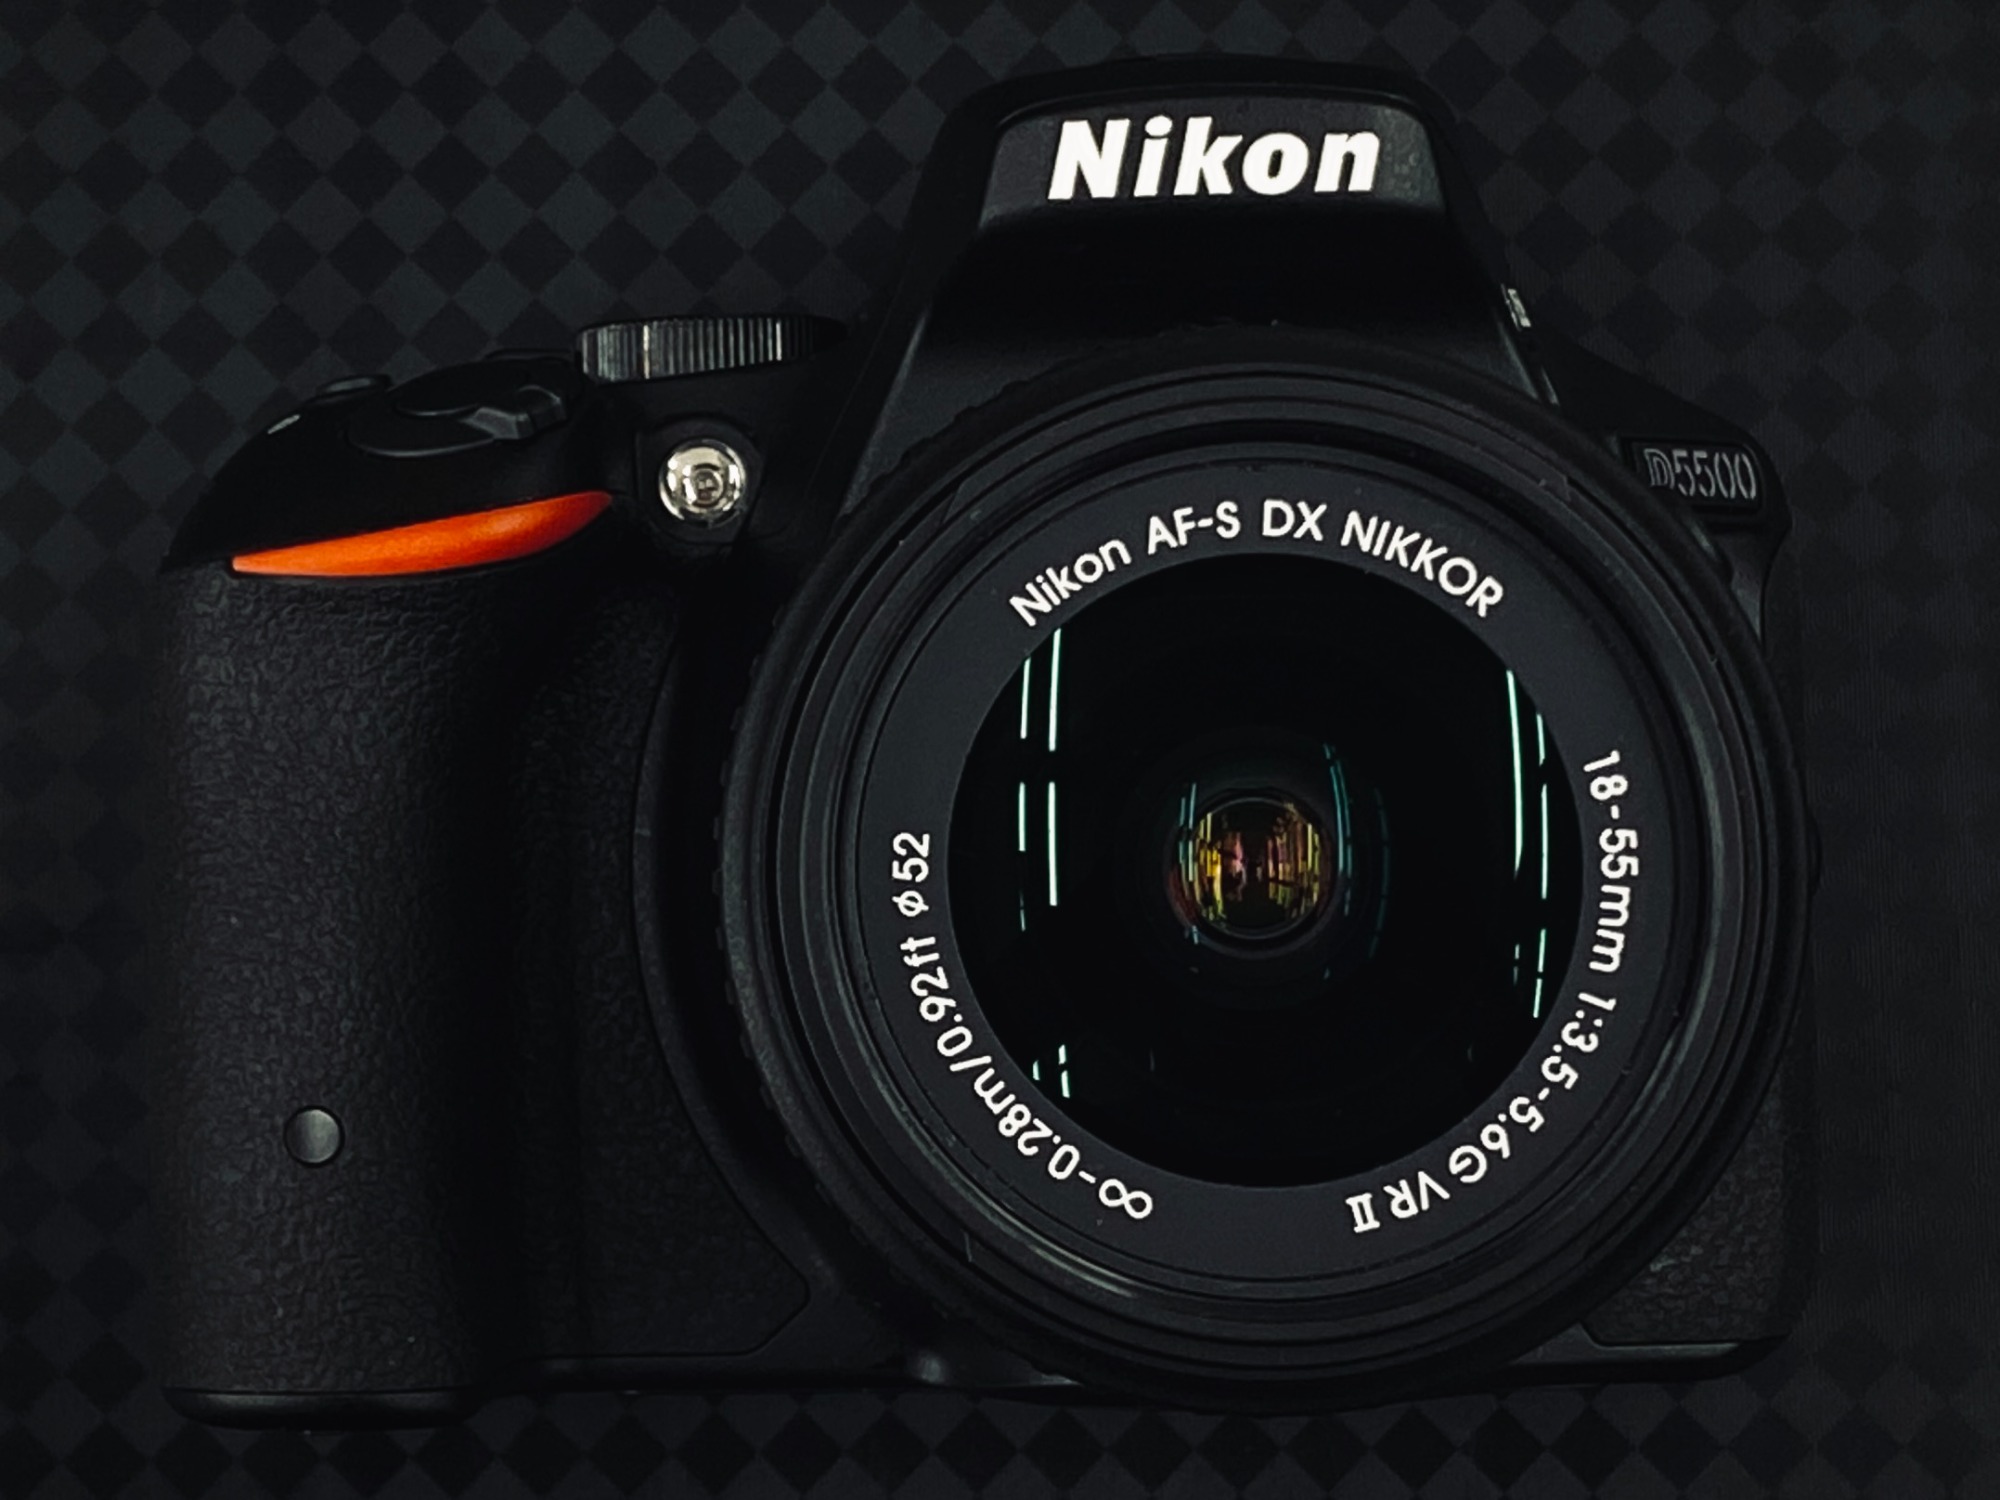 *本日限り* Nikon ニコン D5500 18-55レンズ